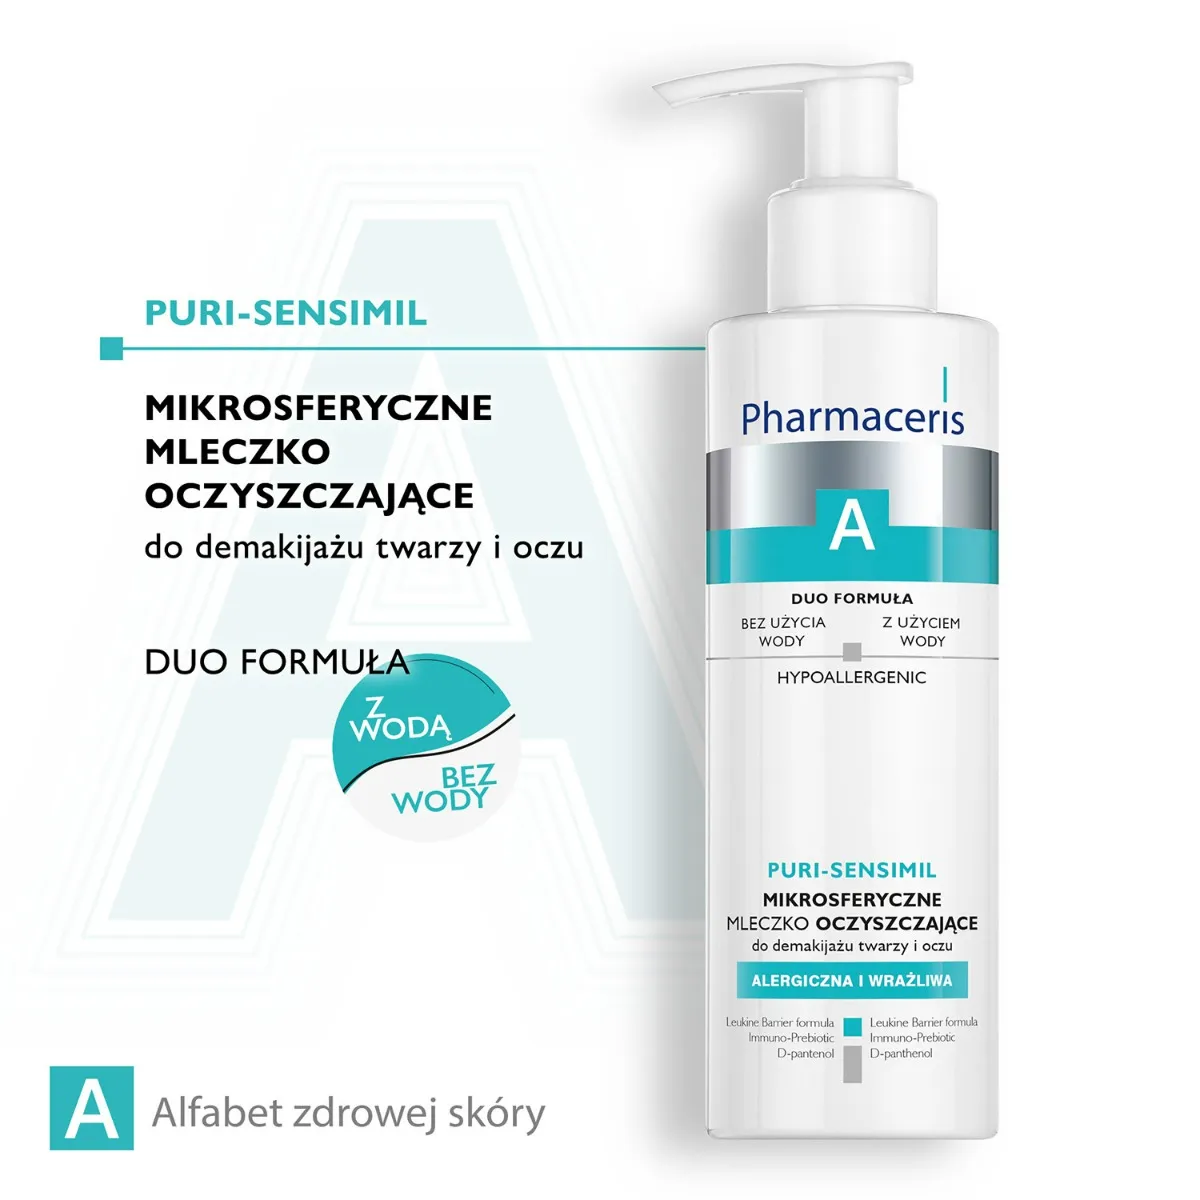 Pharmaceris A Puri-Sensimil, mikrosferyczne mleczko oczyszczające do demakijażu twarzy i oczu, 190 ml 